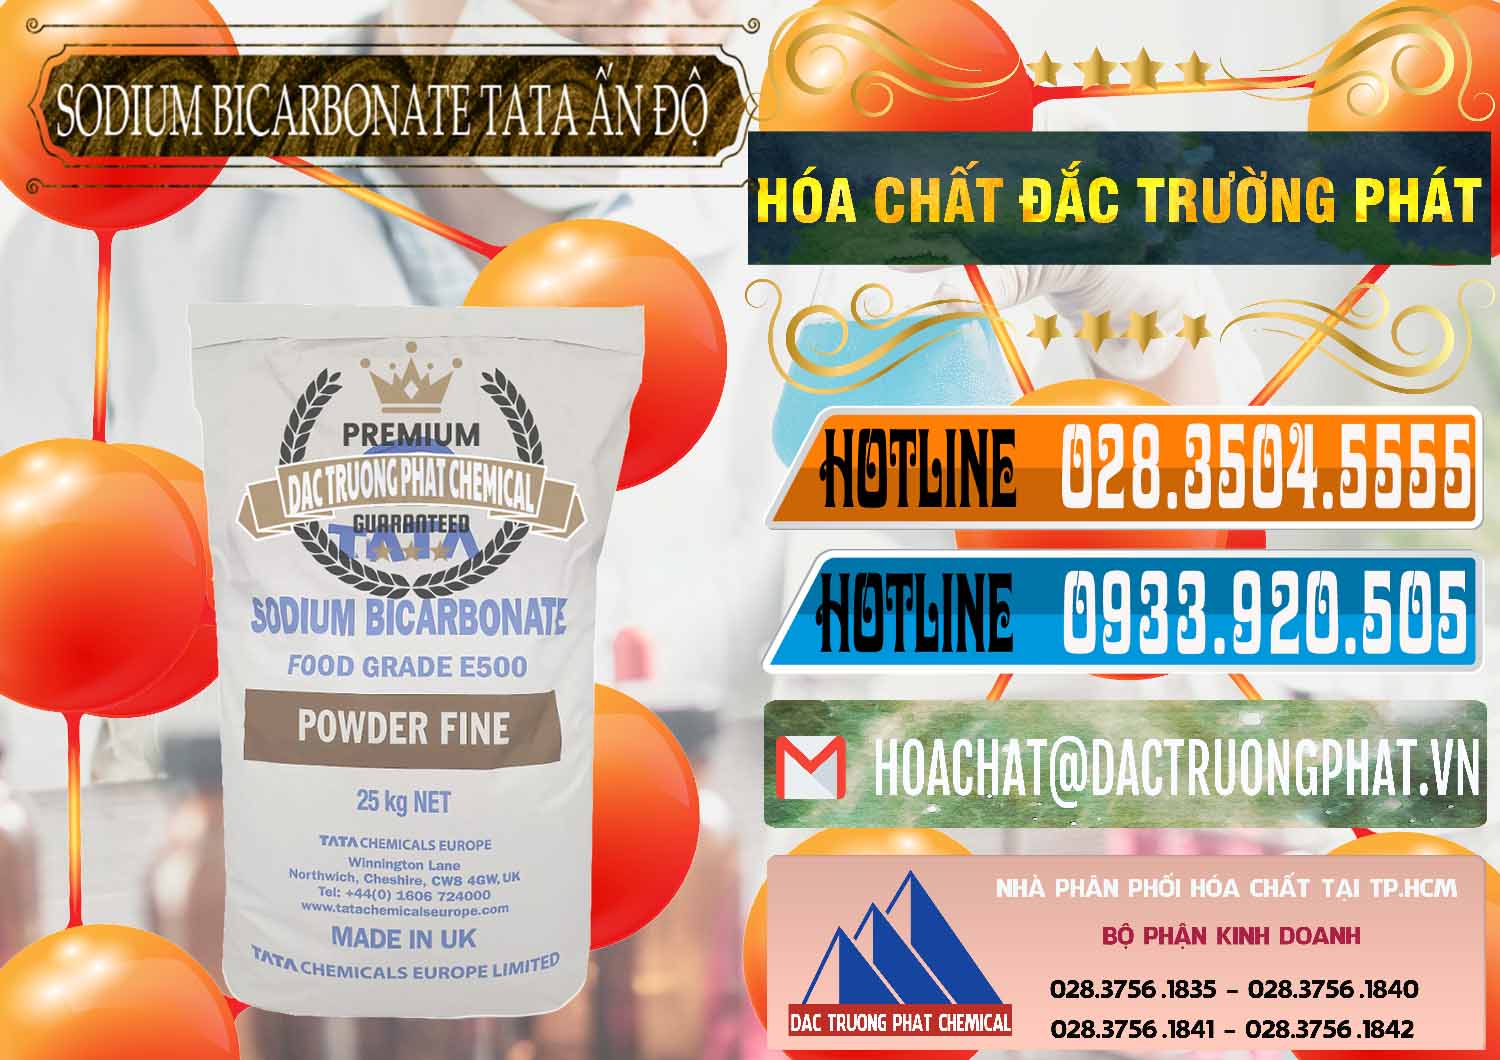 Đơn vị chuyên bán và cung ứng Sodium Bicarbonate – Bicar NaHCO3 E500 Thực Phẩm Food Grade Tata Ấn Độ India - 0261 - Chuyên kinh doanh & phân phối hóa chất tại TP.HCM - stmp.net